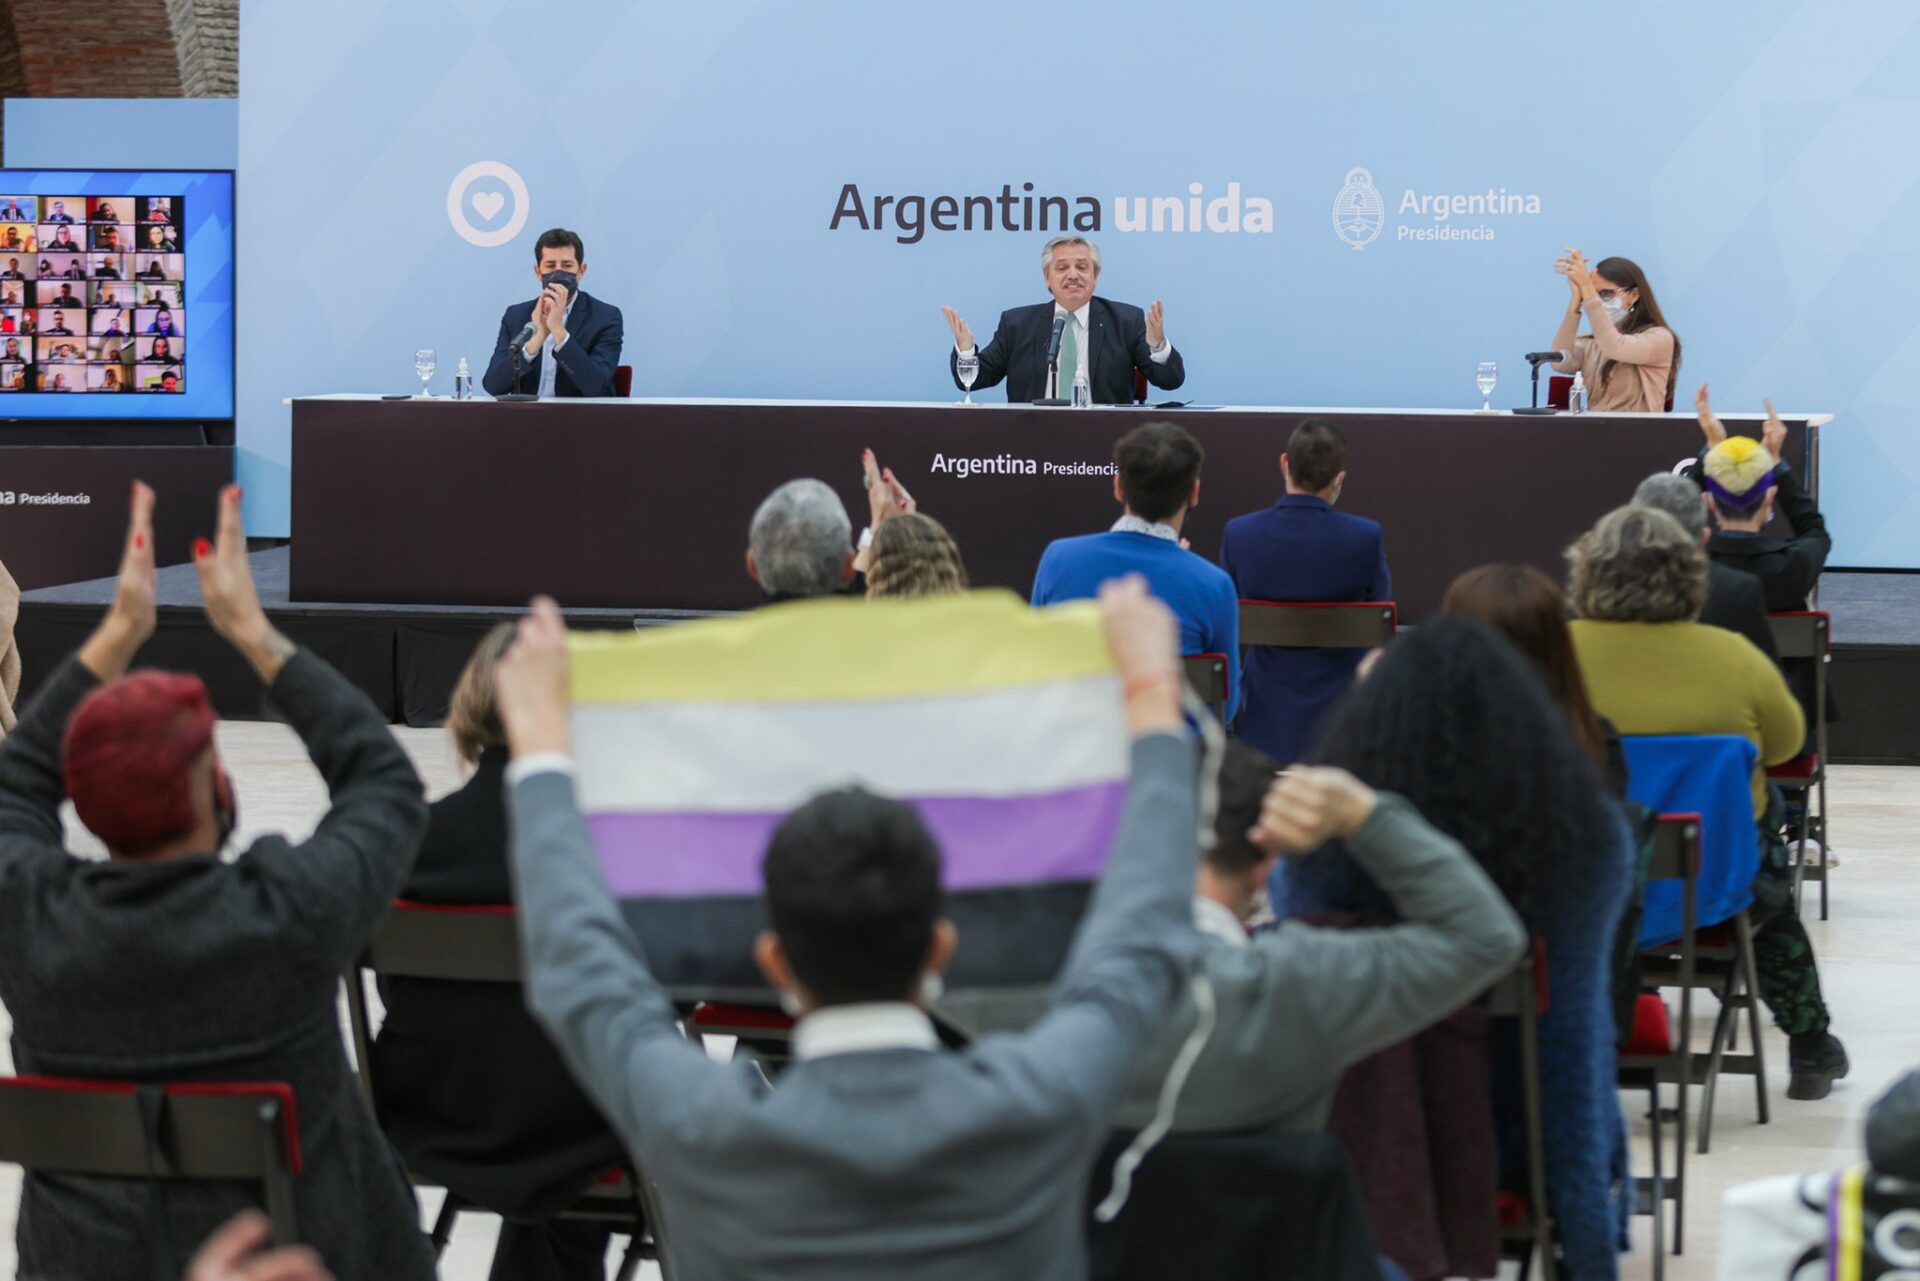 El DNI con una ‘X’ argentino no convence a toda la comunidad no binaria